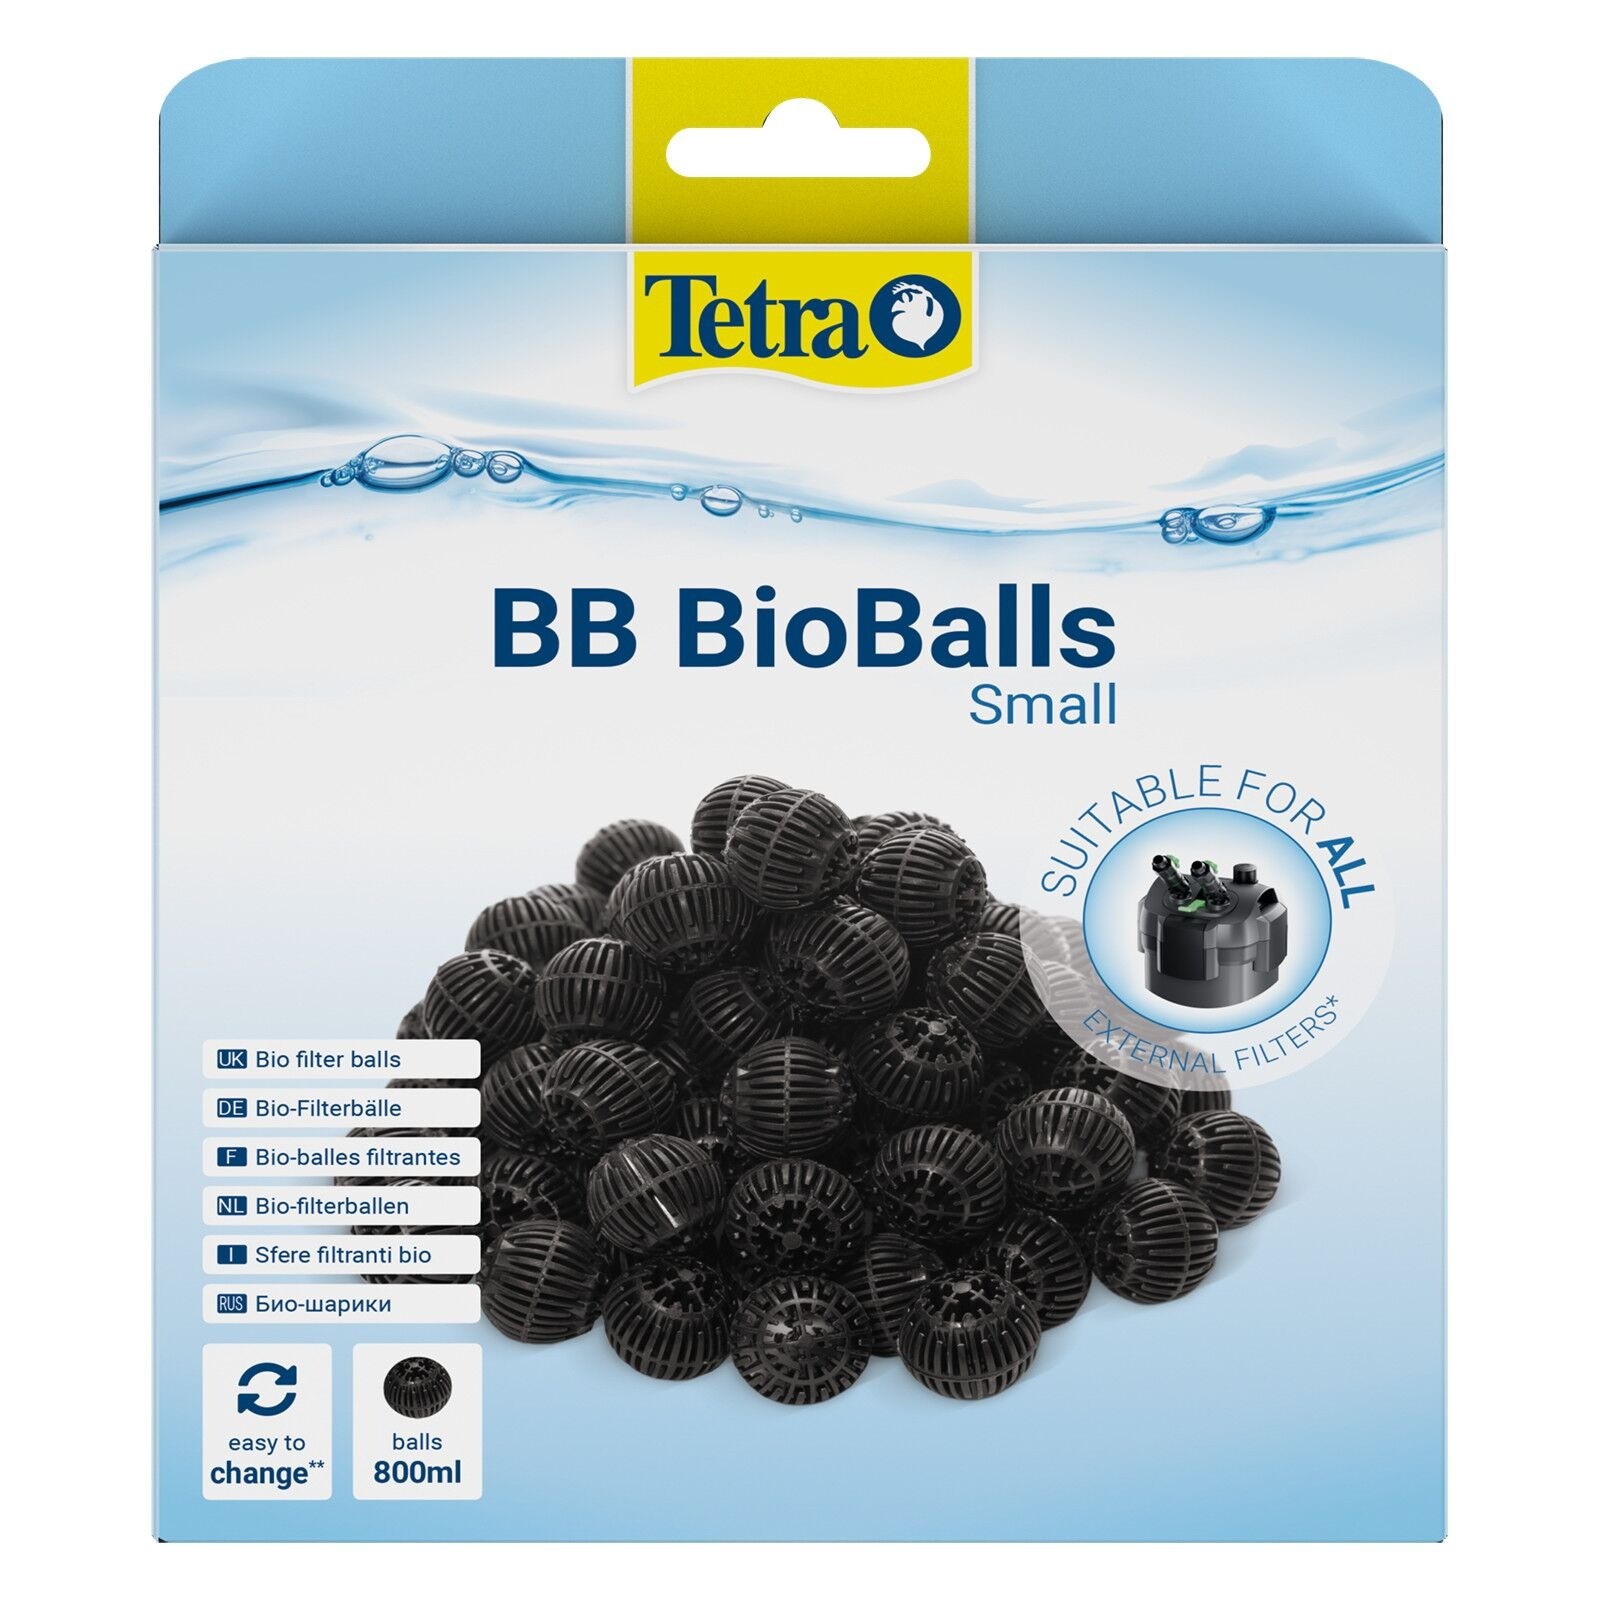 Tetra BB Bioball